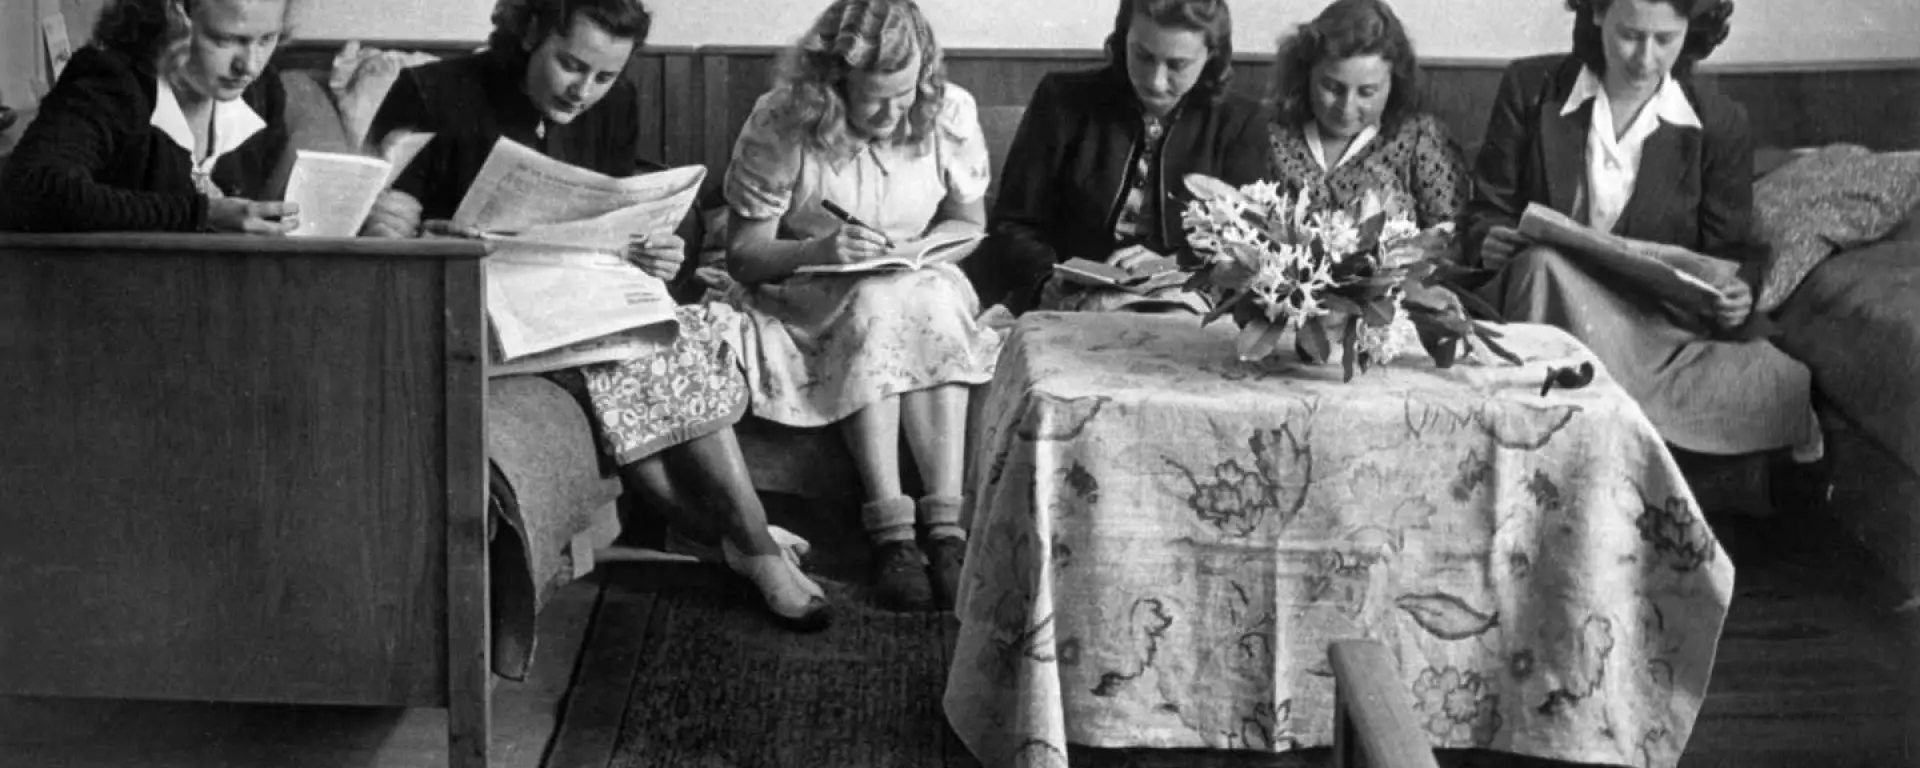 Studentinnen im Wohnheim, 50er Jahre